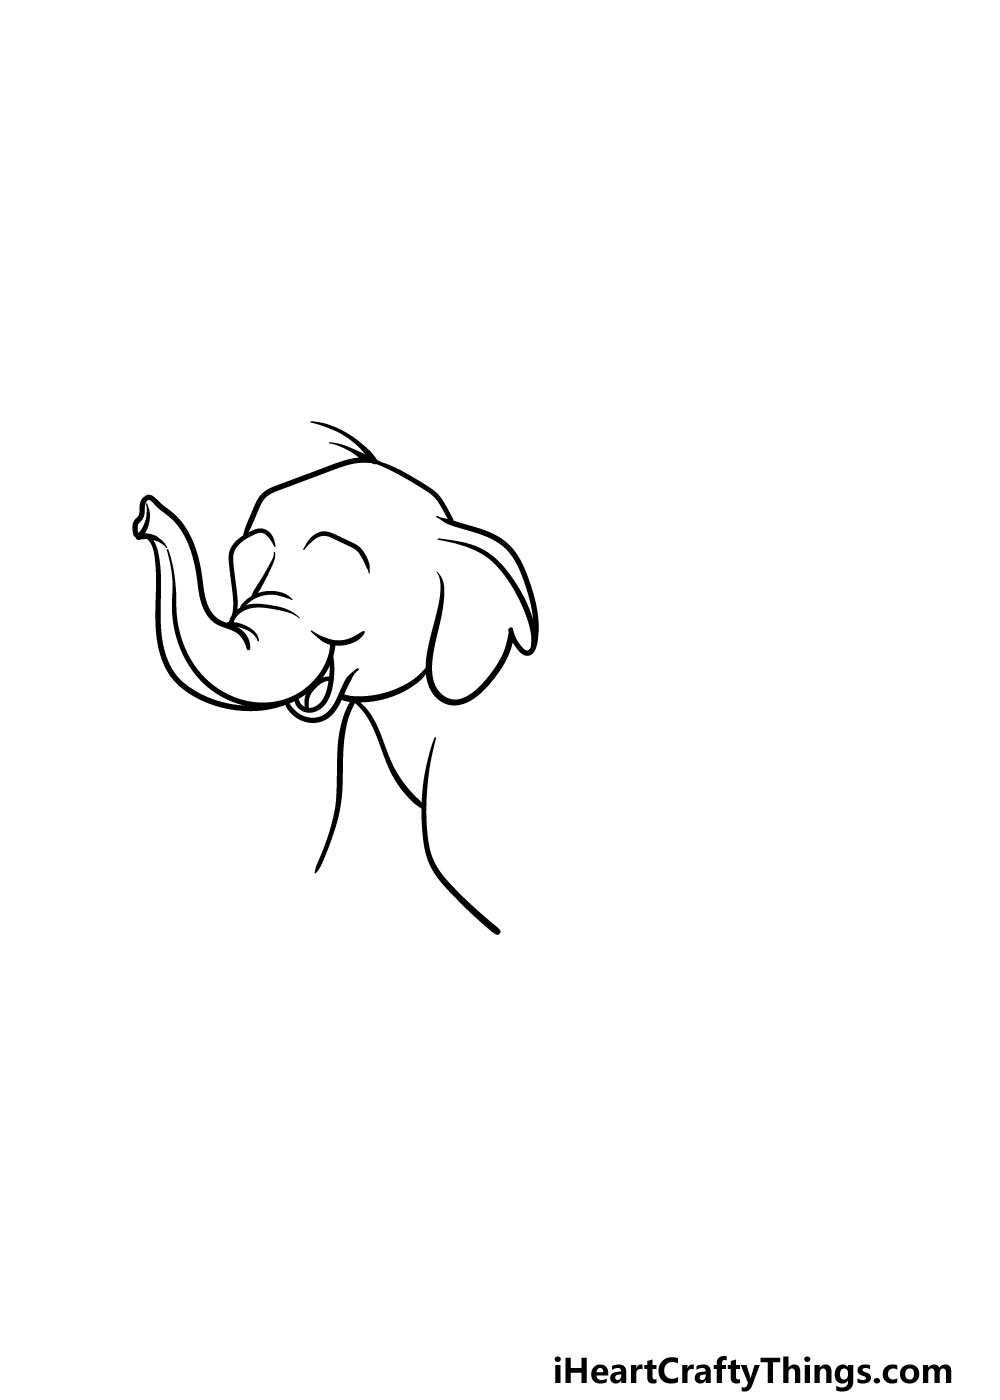 2 101 - Hướng dẫn chi tiết cách vẽ con voi đơn giản với 6 bước cơ bản